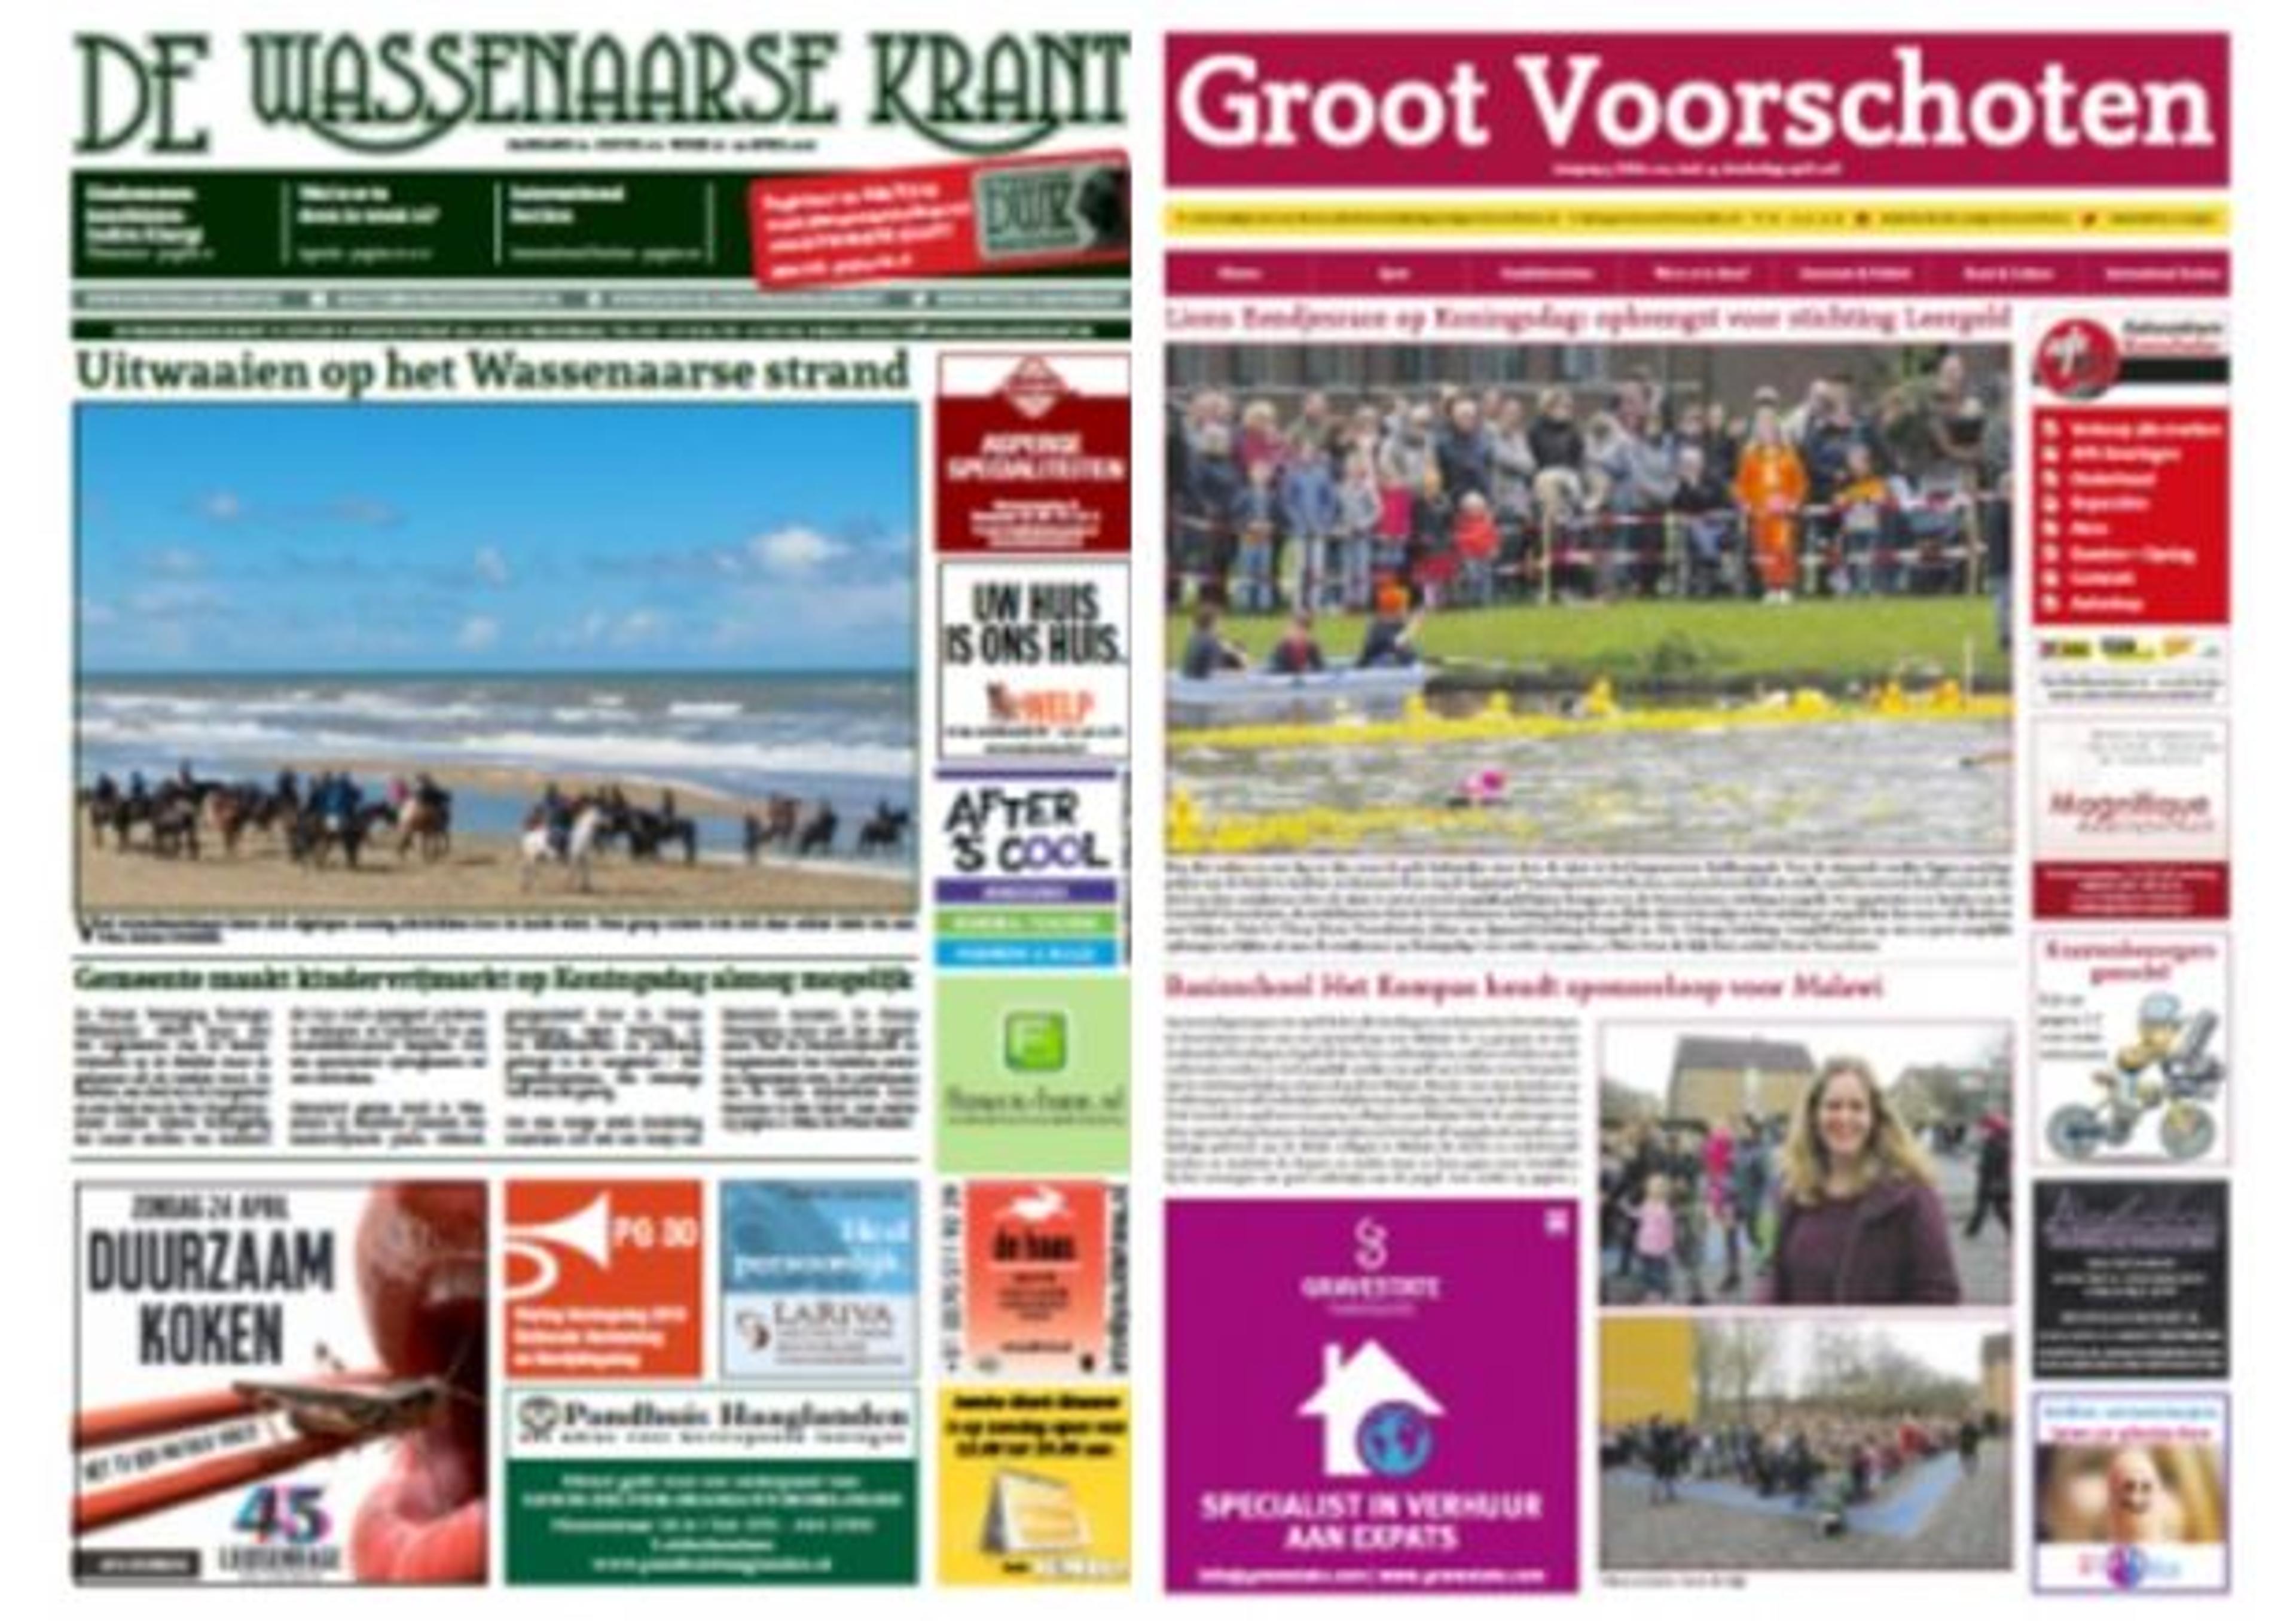 Groot Voorschoten/ De Wassenaarse Krant